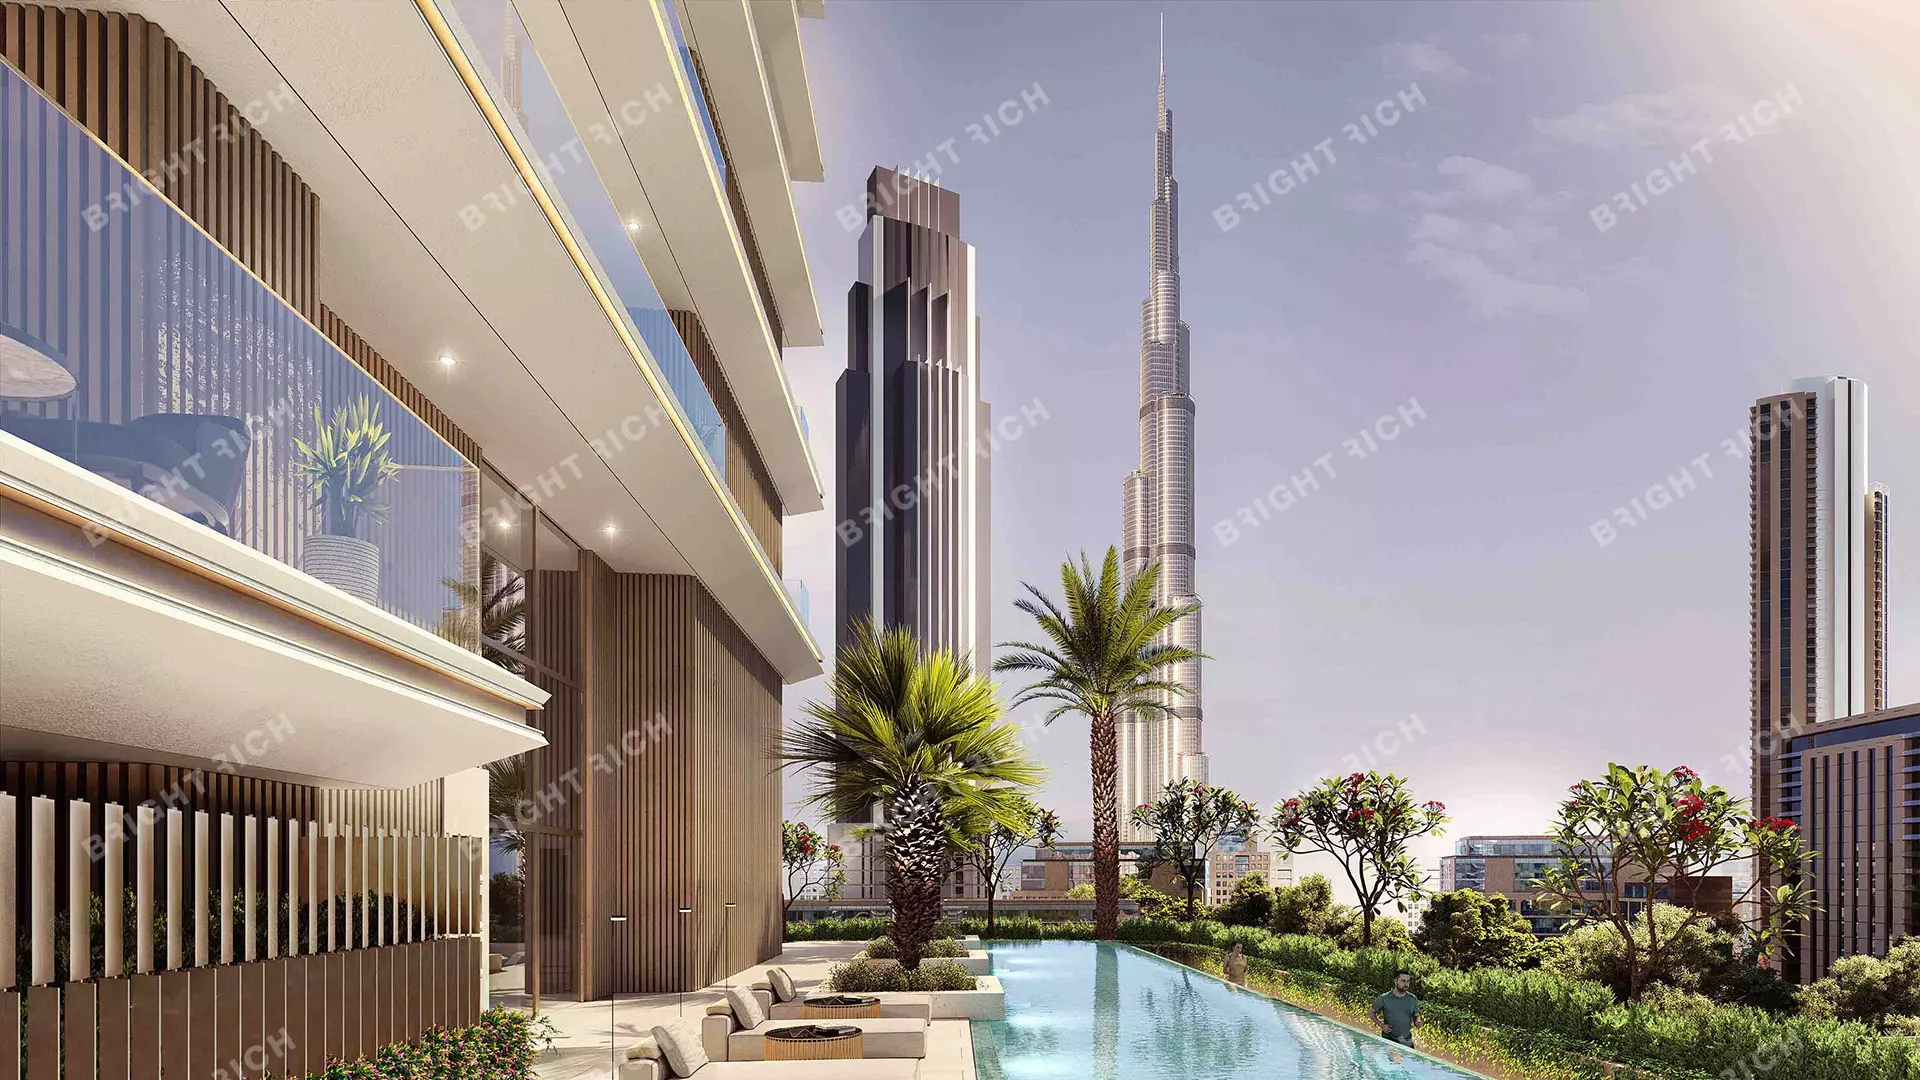 The St. Regis Residences , apart complex in Dubai - 14